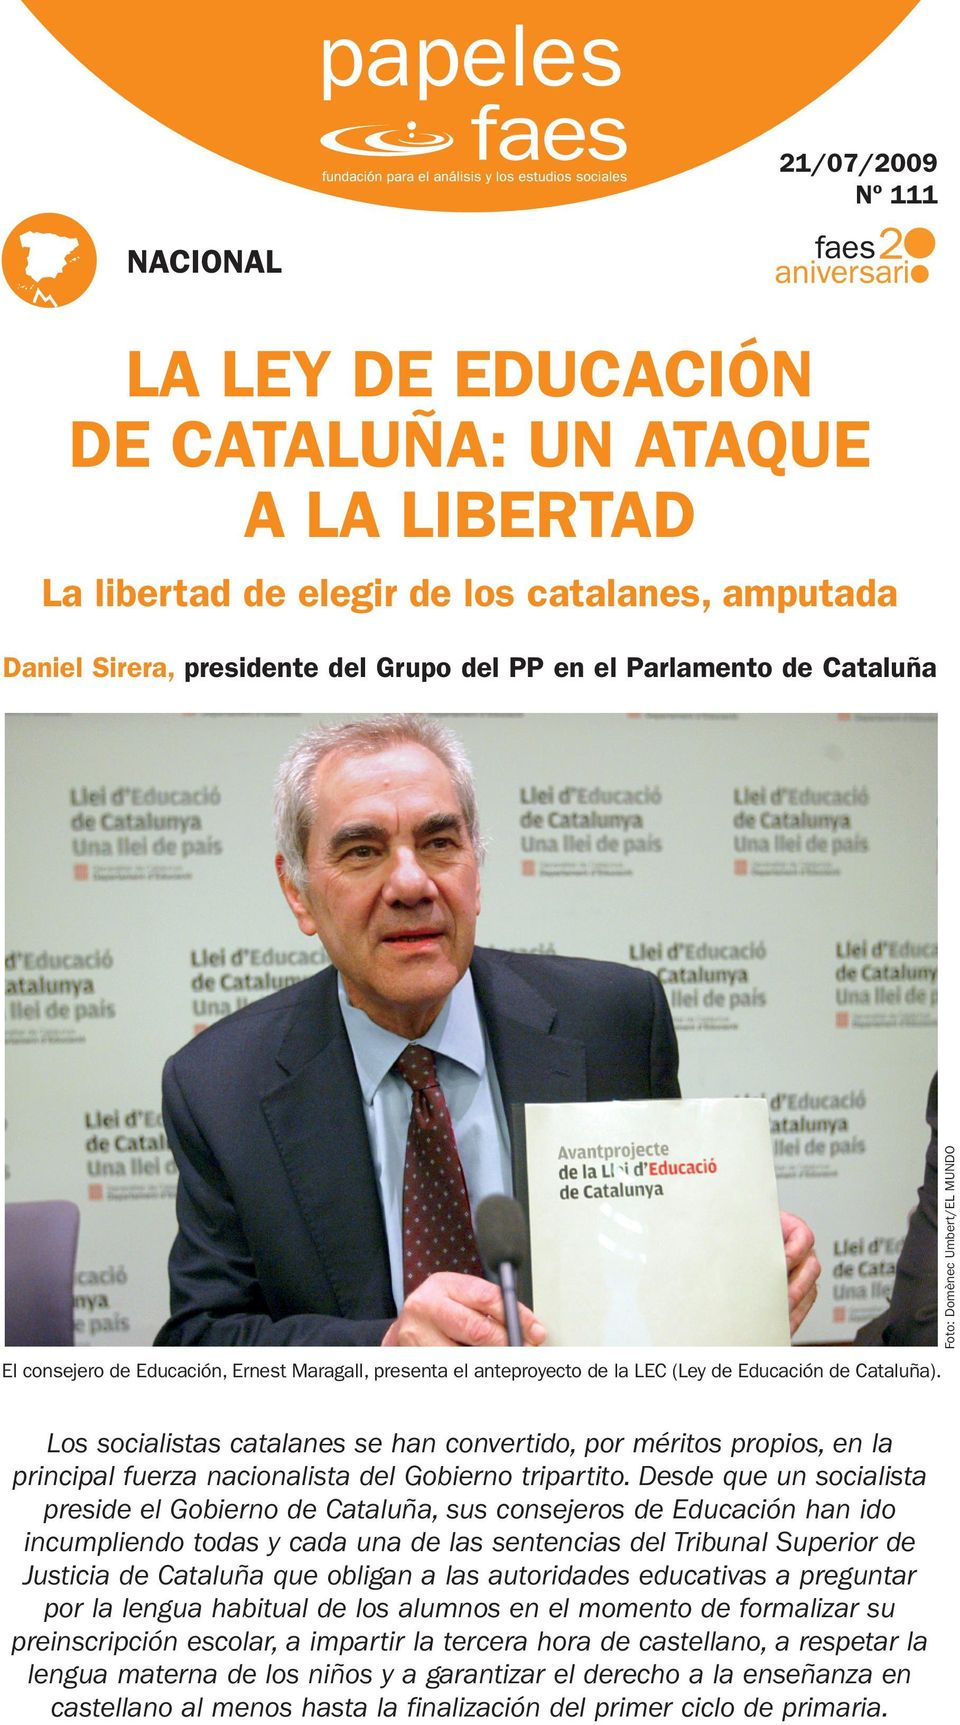 Los socialistas catalanes se han convertido, por méritos propios, en la principal fuerza nacionalista del Gobierno tripartito.